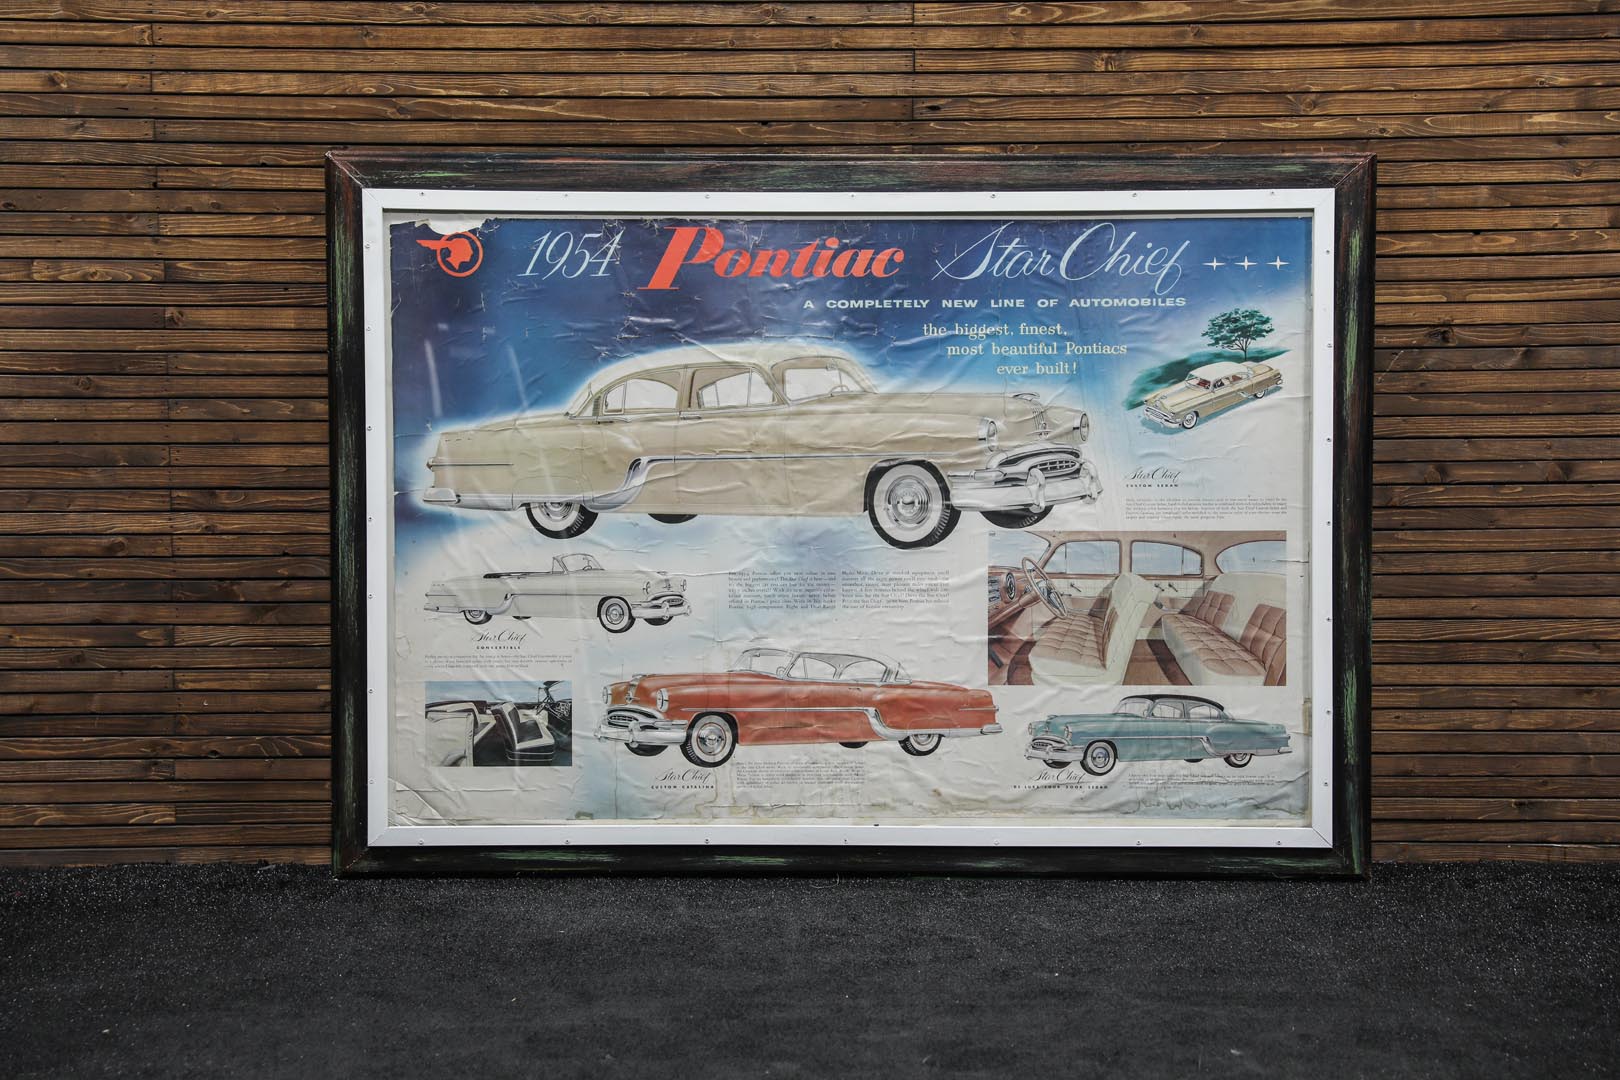  1954 Pontiac Dealership Showro om Poster - Framed 